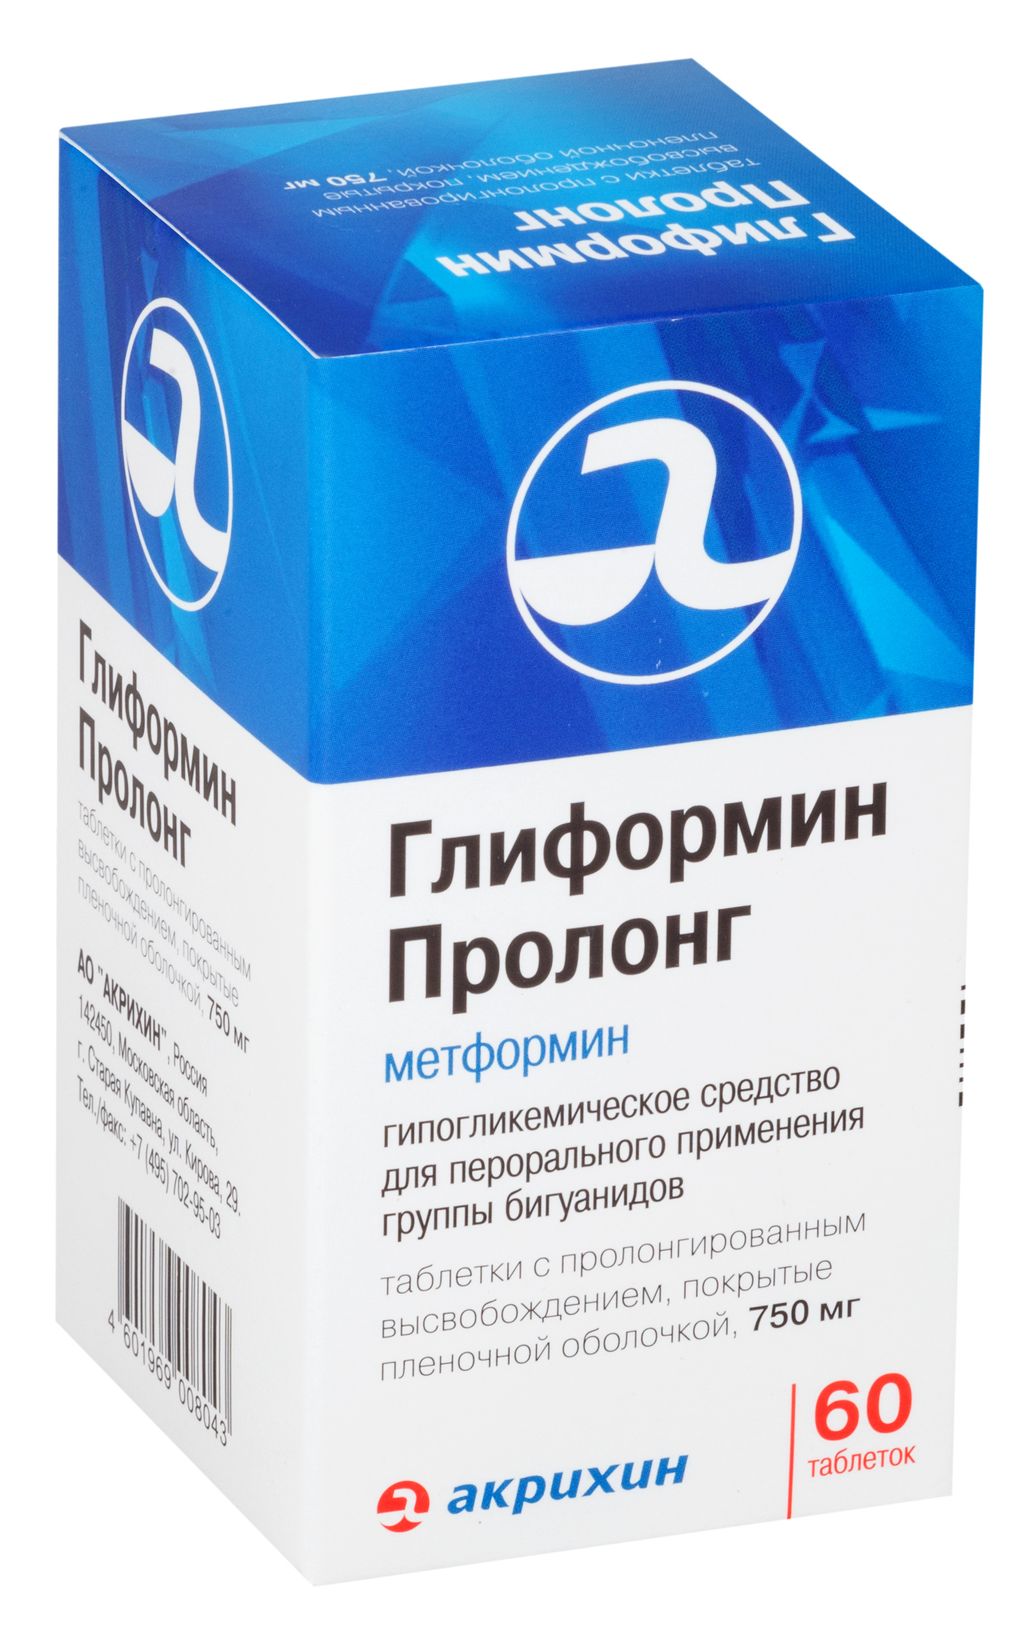 Метформин Пролонг-Акрихин, 750 мг, таблетки с пролонгированным высвобождением, покрытые пленочной о